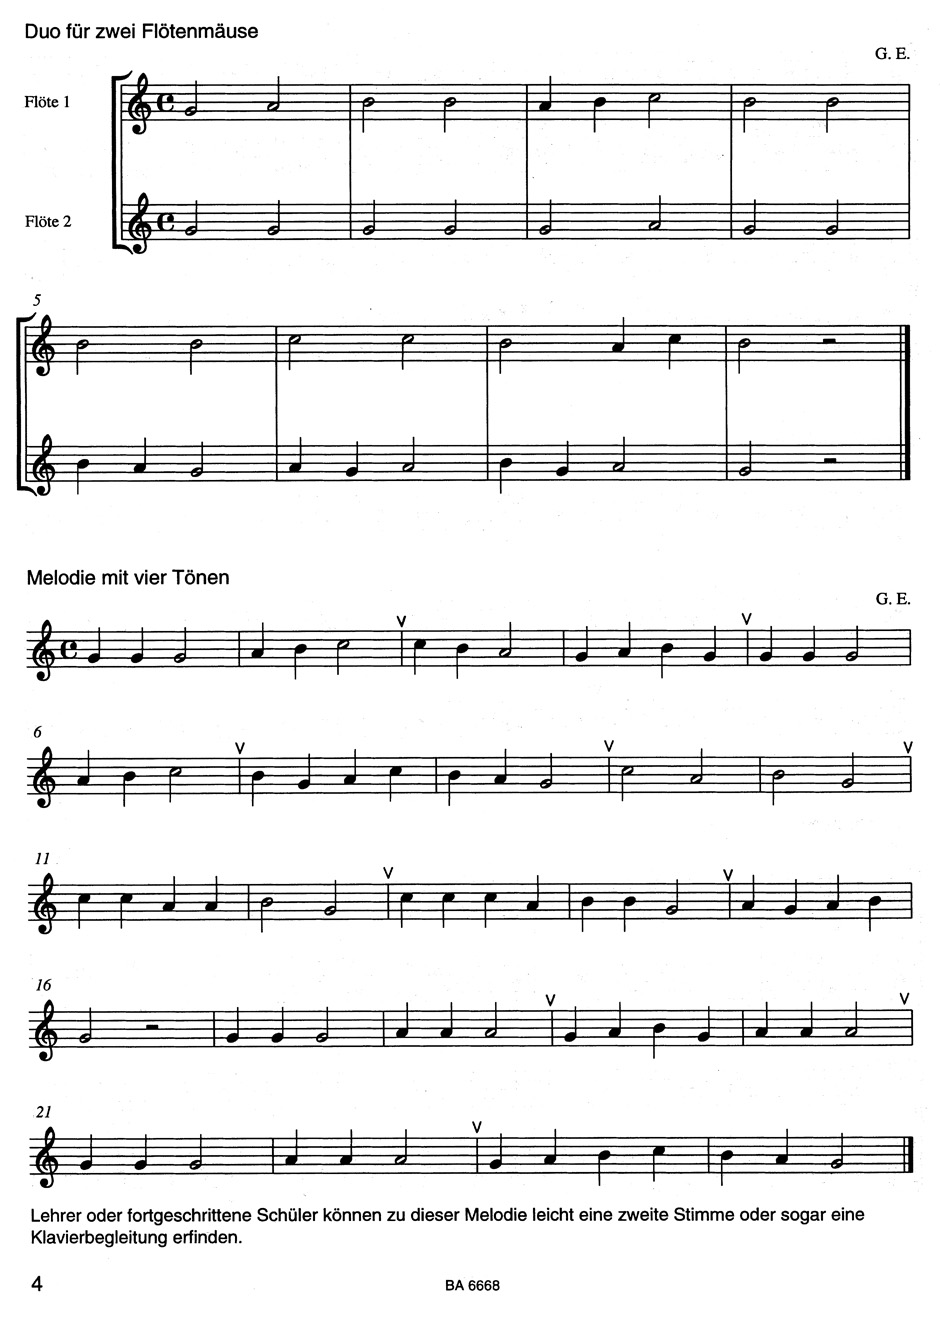 Musiknoten Die Flötenmaus, Band 1, Engel